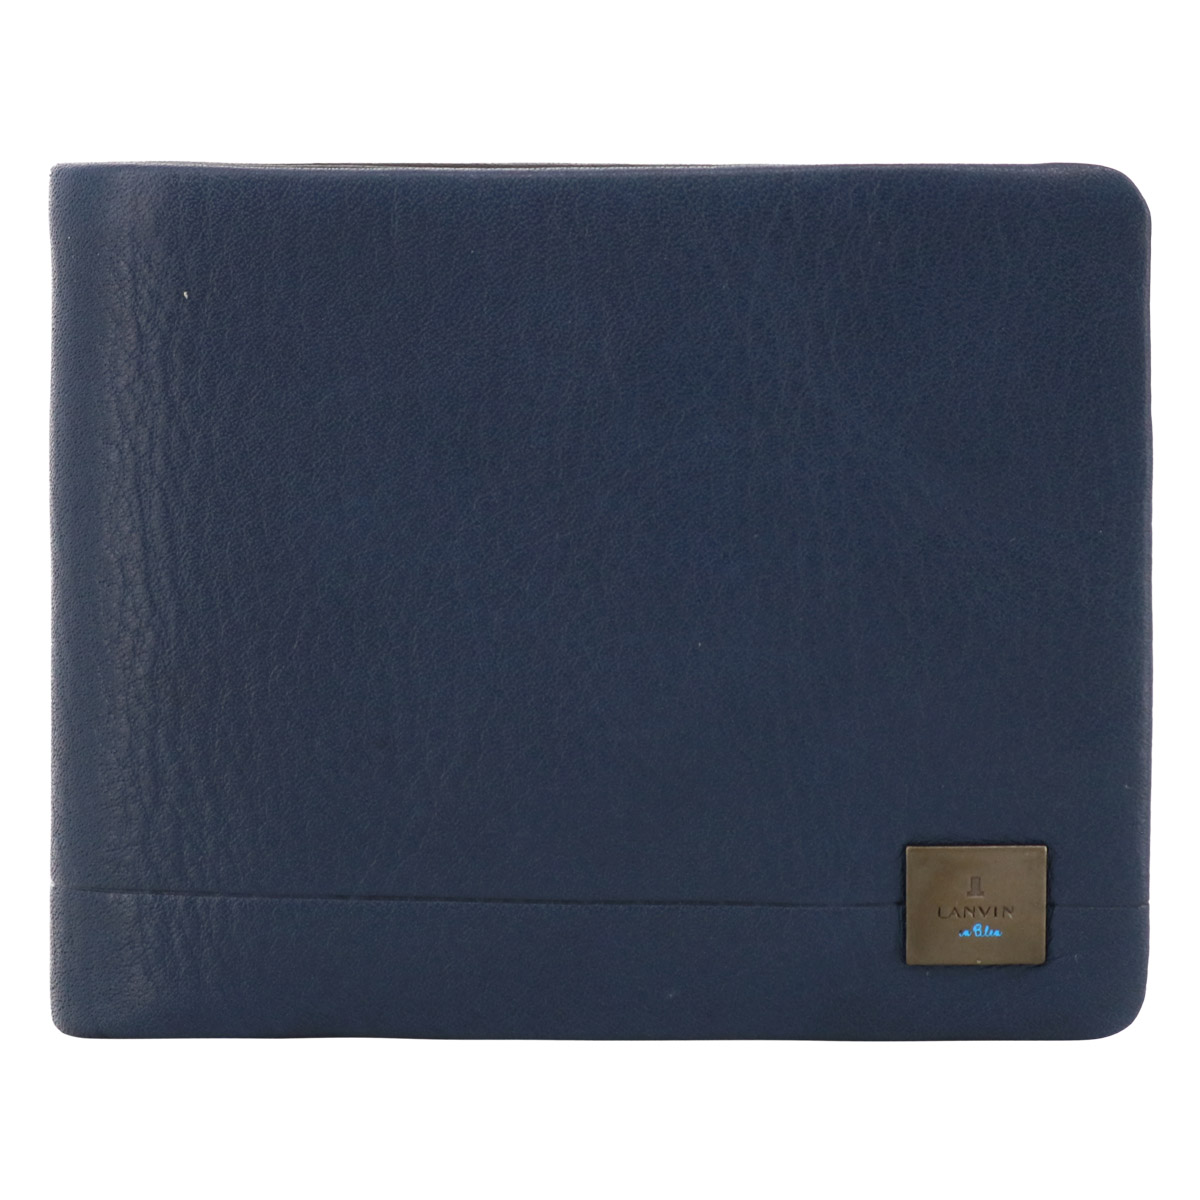 ランバンオンブルー 財布 二つ折り 本革 メンズ 536603 マルセイユ